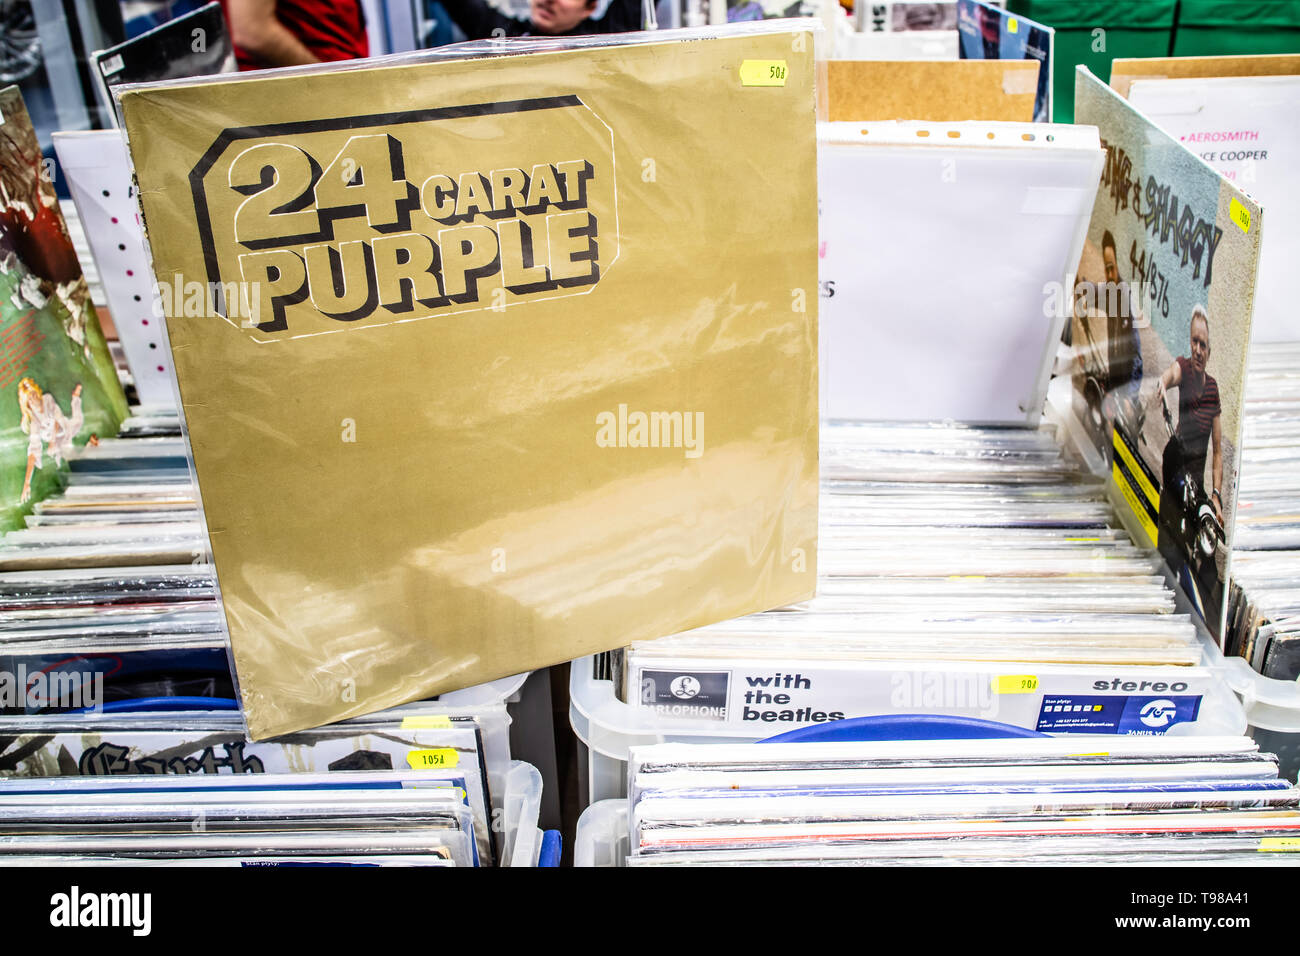 Nadarzyn, Polonia, 11 maggio 2019 Deep Purple album in vinile sul display per la vendita, vinile, LP, Album rock, inglese rock band, collezione di vinili Foto Stock